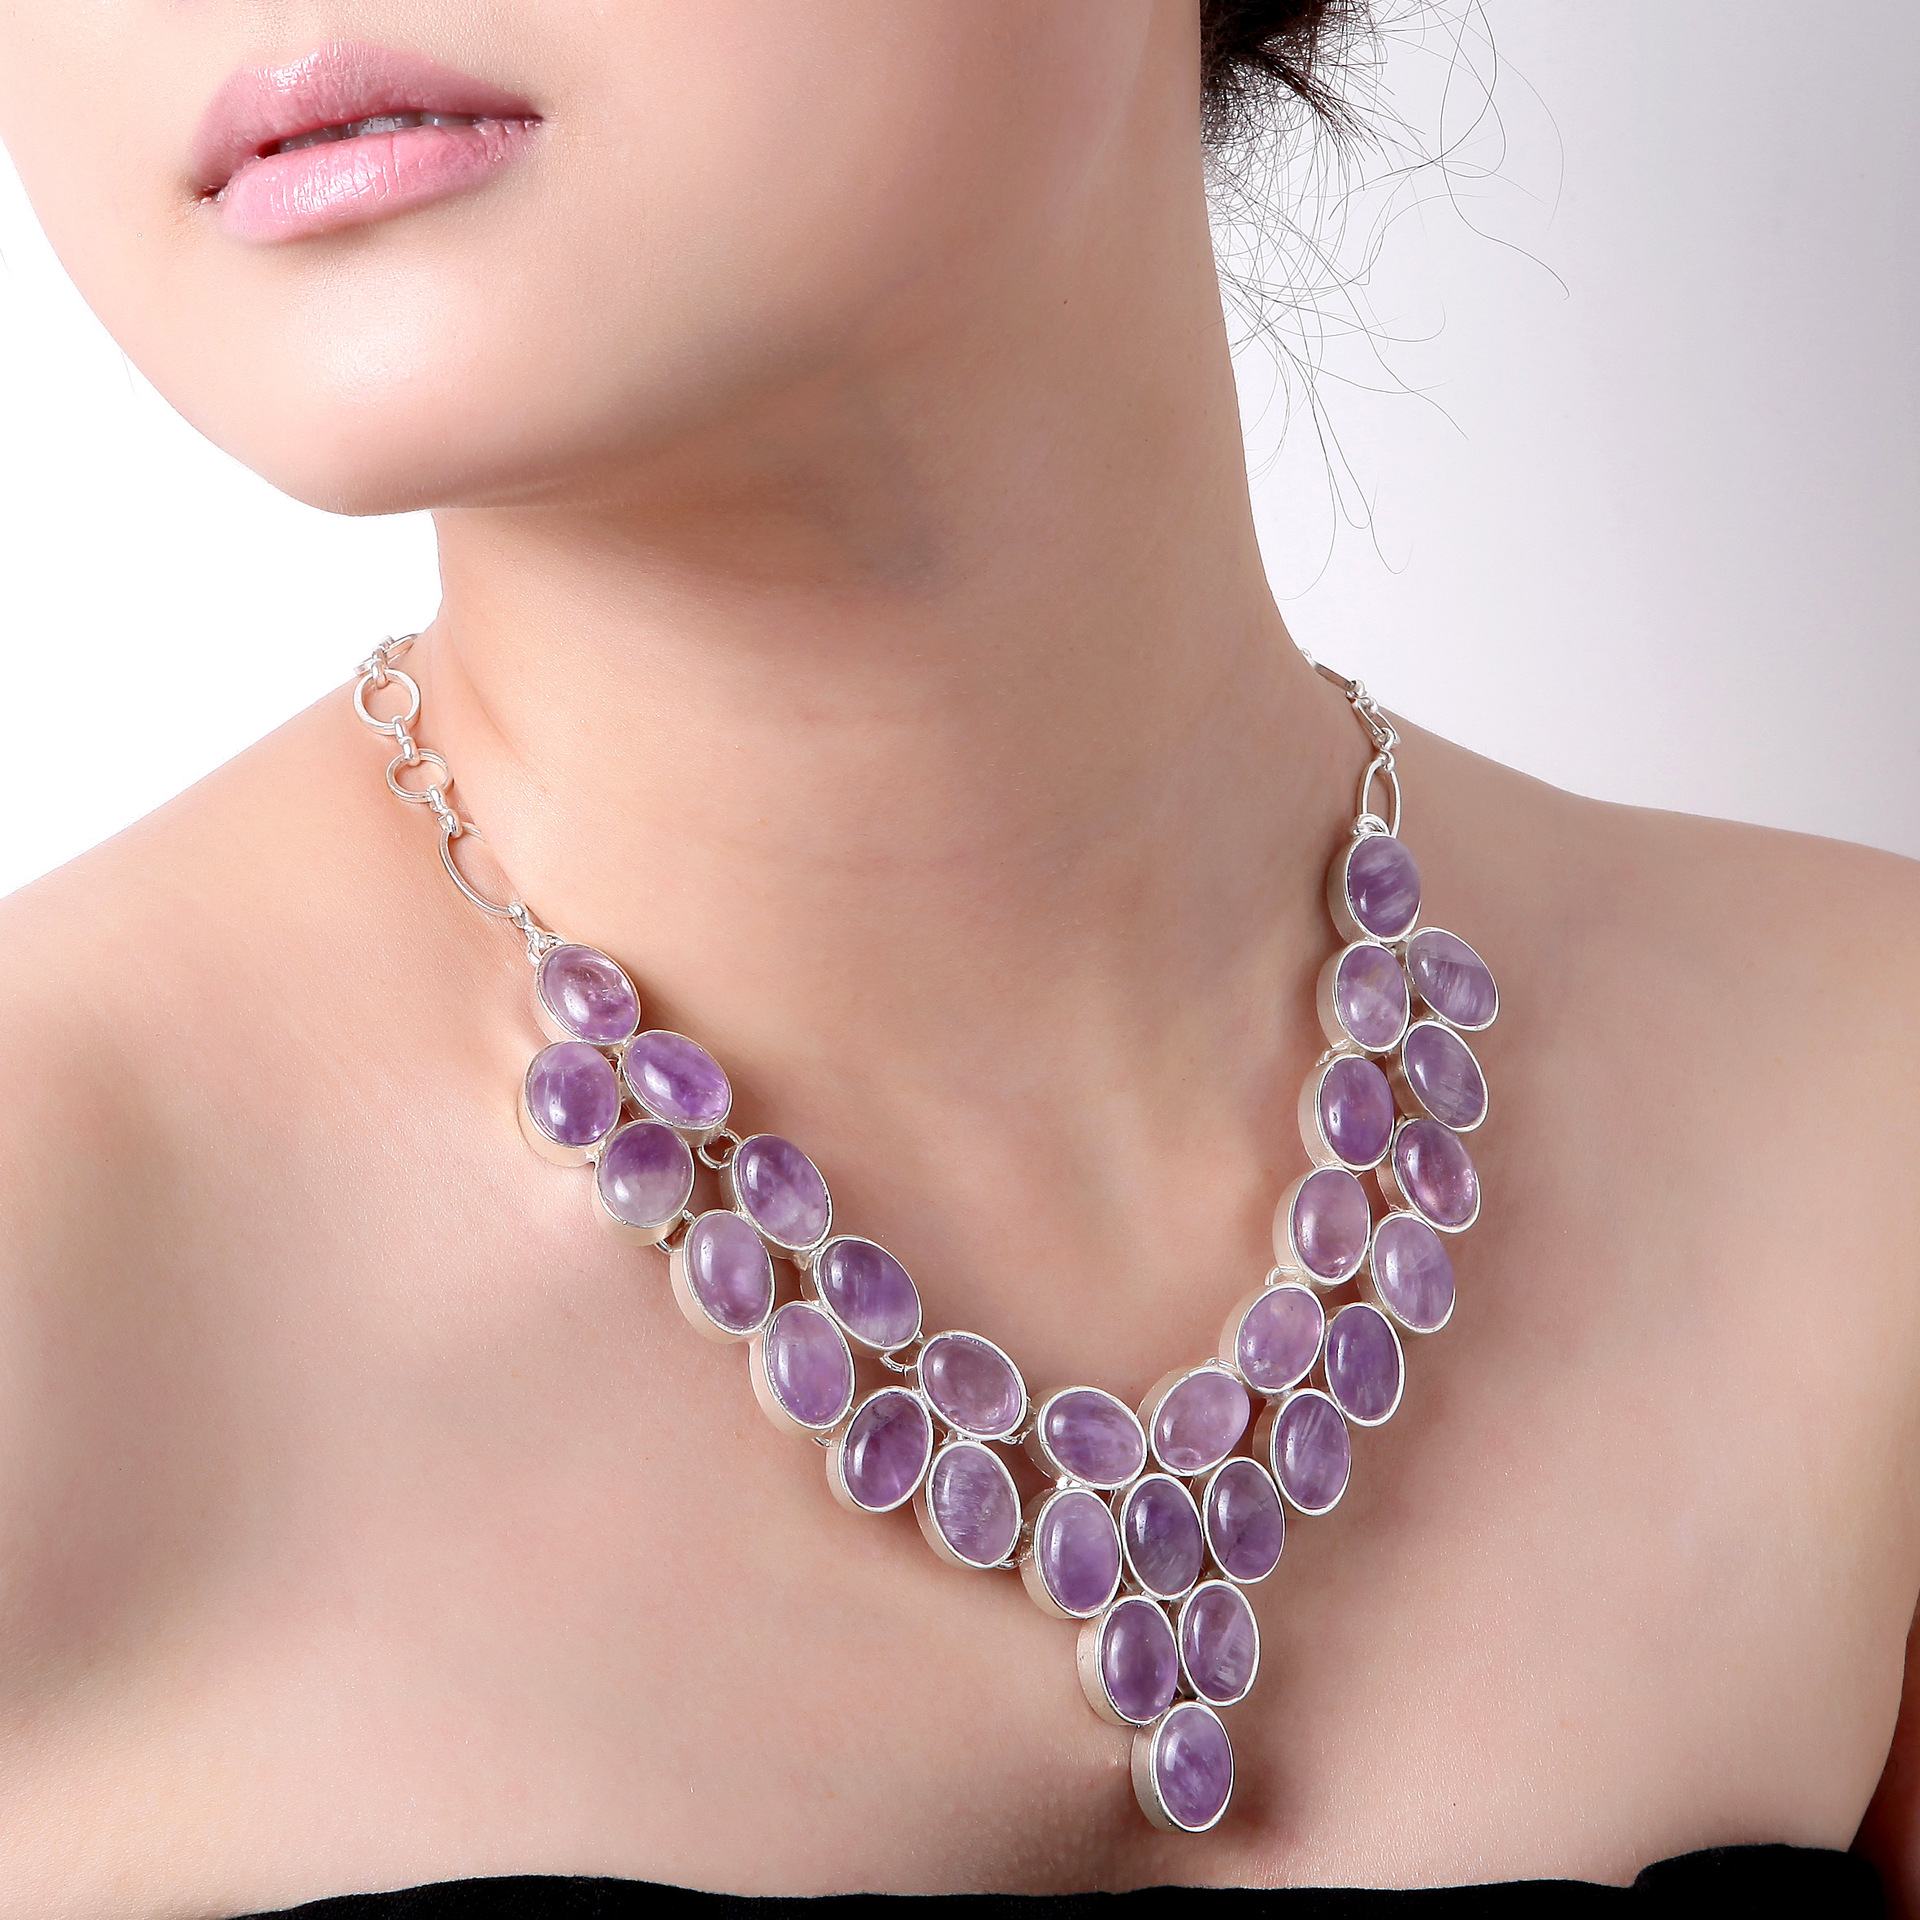 服饰配件,饰品 紫水晶   产品说明 此款项链:   重量:105g 链子周长